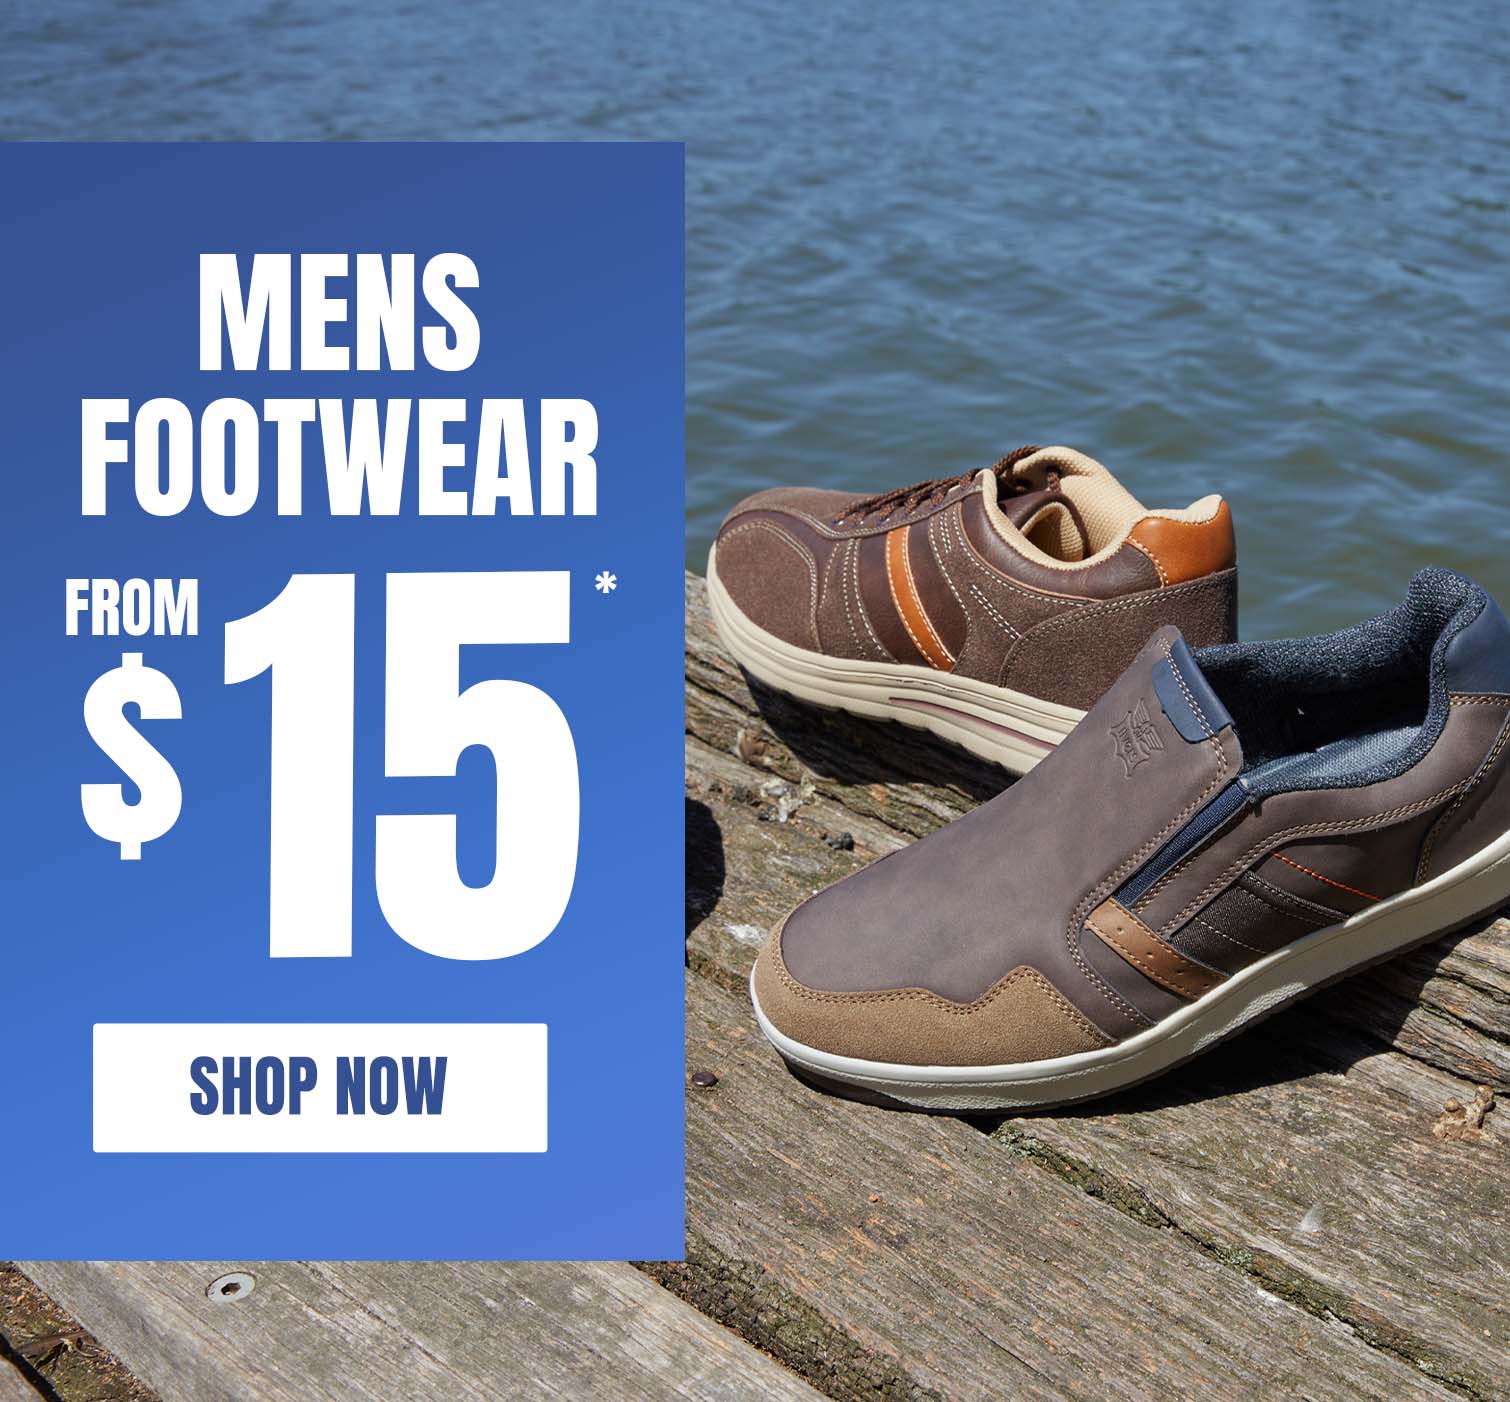 Shop Men's Footwear!